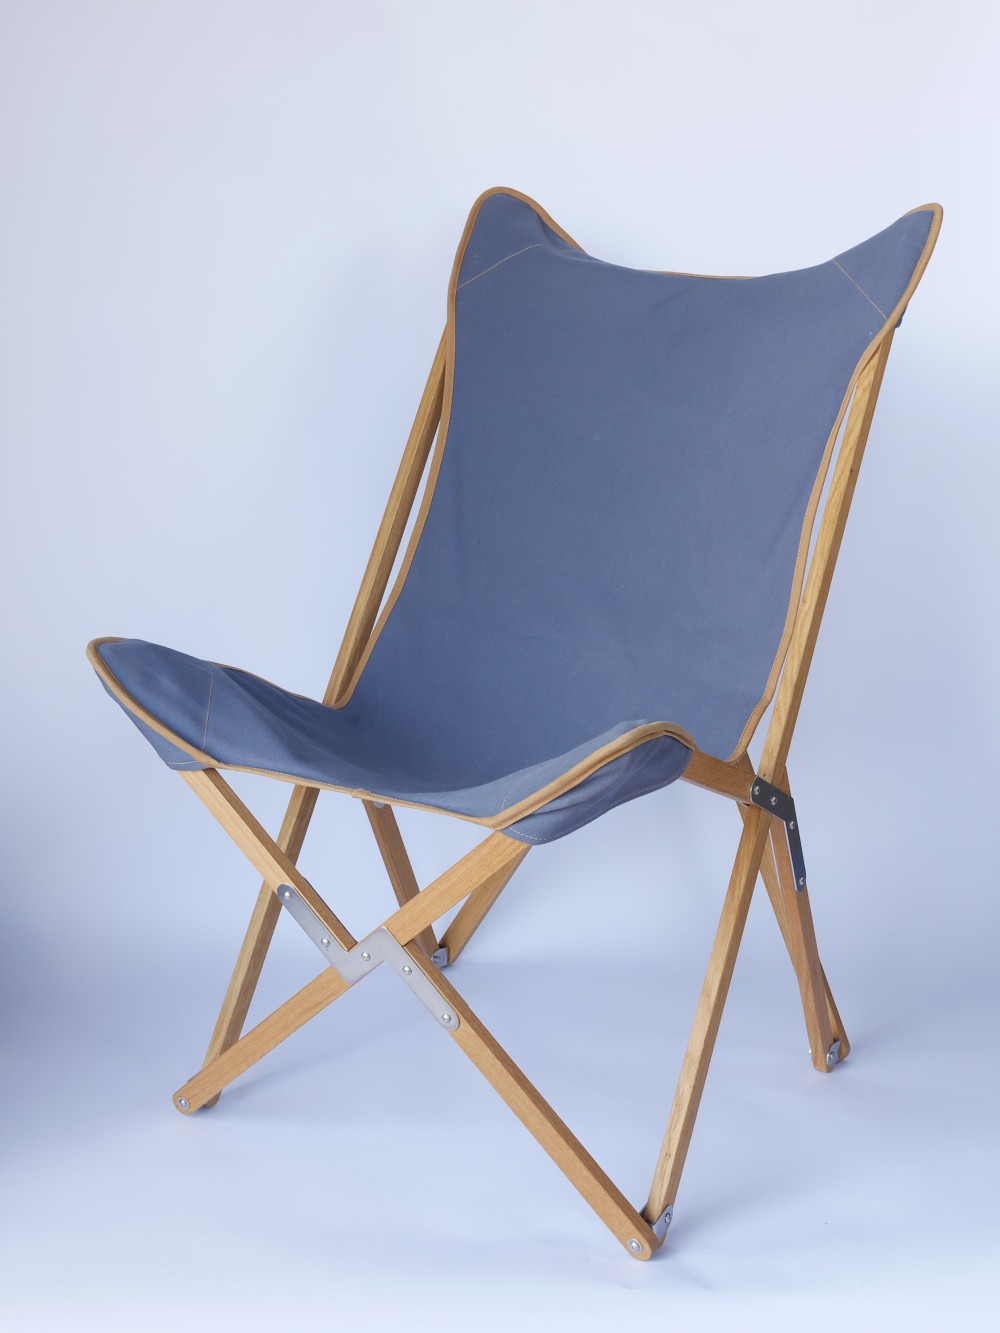 Kampierstuhl TP aus Eiche mit Sitzfläche Segeltuch blau